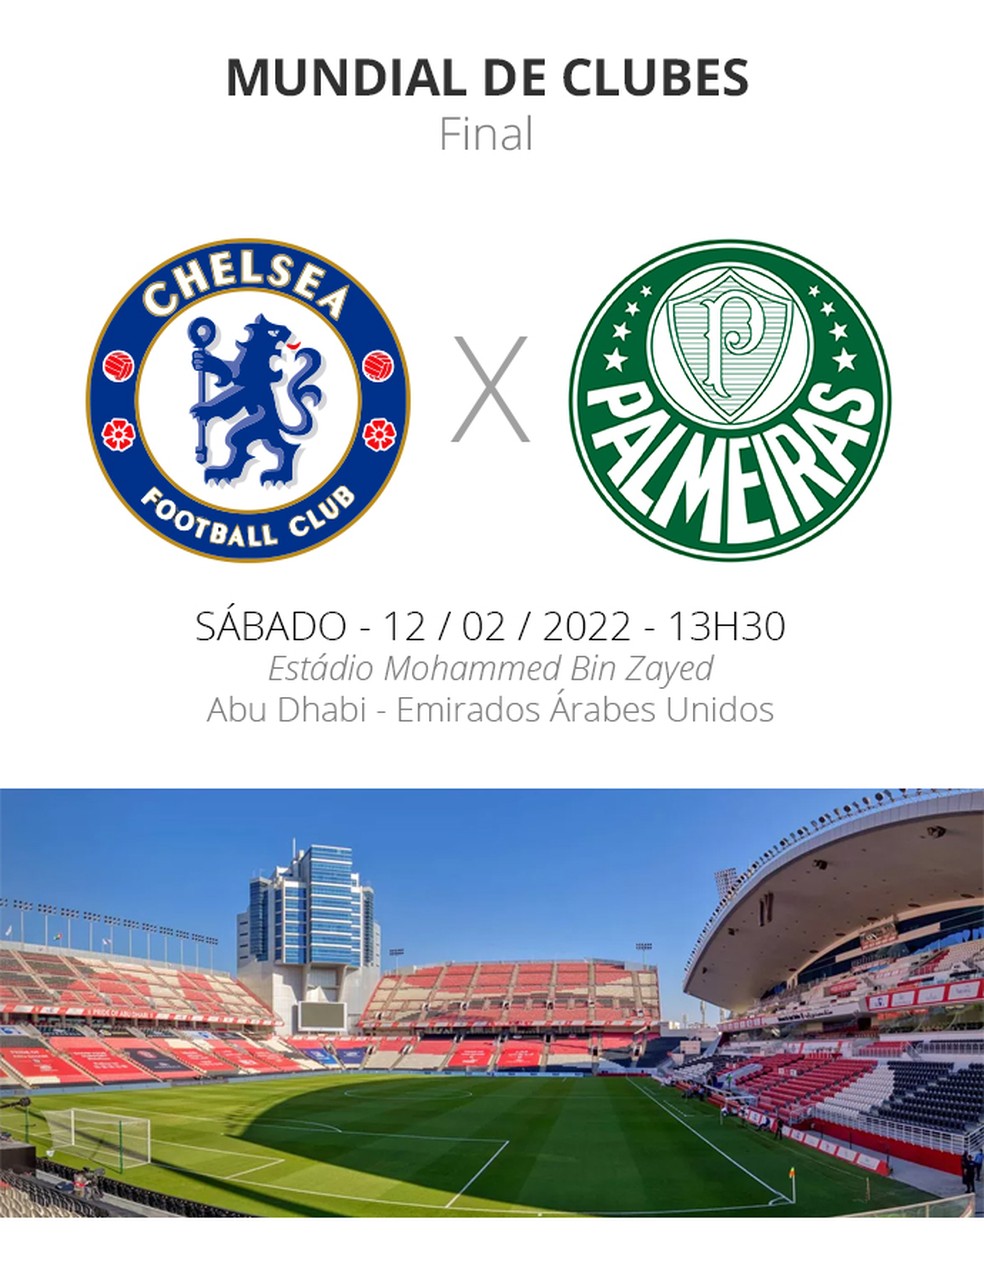 Chelsea 2 x 1 Palmeiras, Final do Mundial de Clubes da FIFA 2021